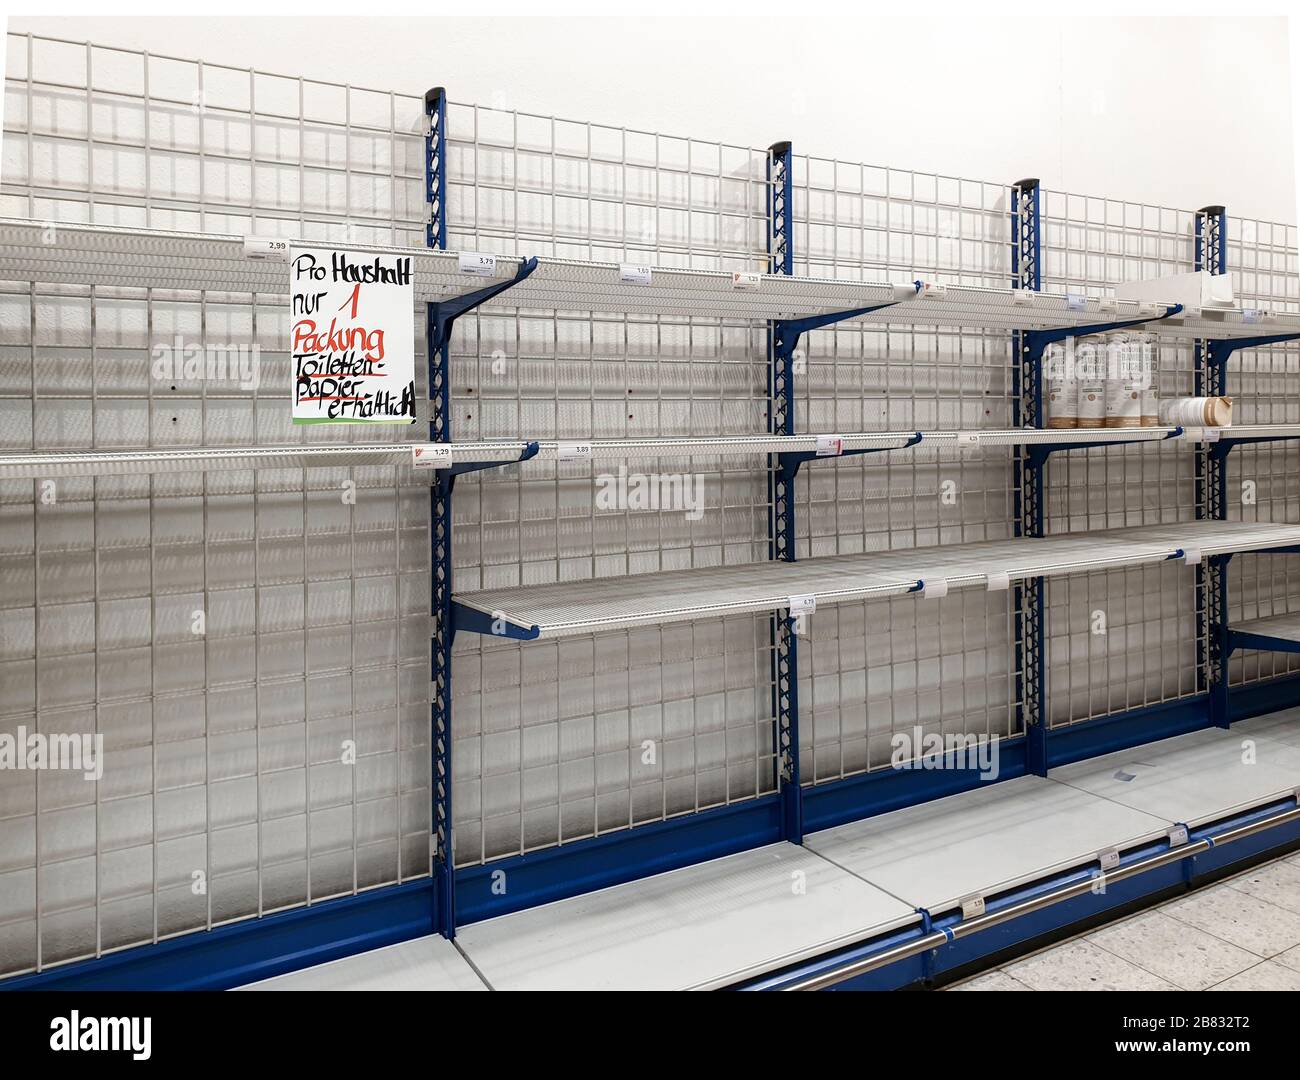 GEISLINGEN AN DER STEIGE, GERMANIA - 16 MARZO 2020: Supermercato con scaffali vuoti che limitano la carta igienica ('un solo pacco di carta igienica per famiglia') Foto Stock